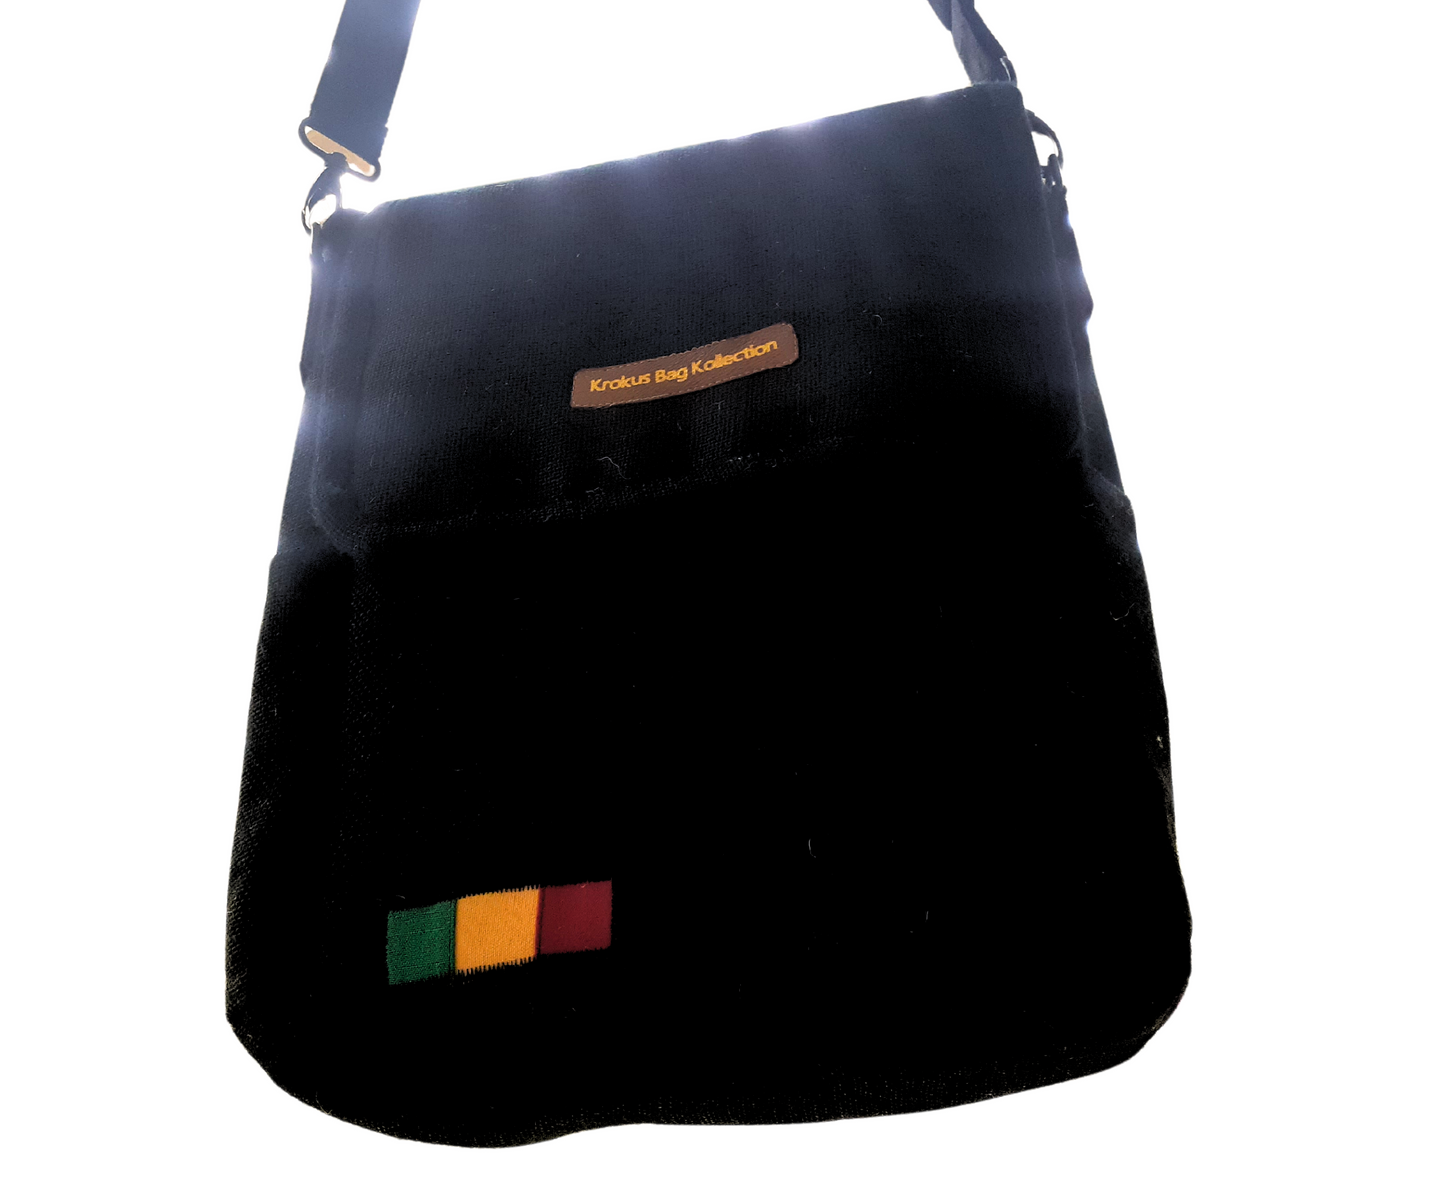 Rasta Inspired Handmade Jute/Burlap Messenger Bag